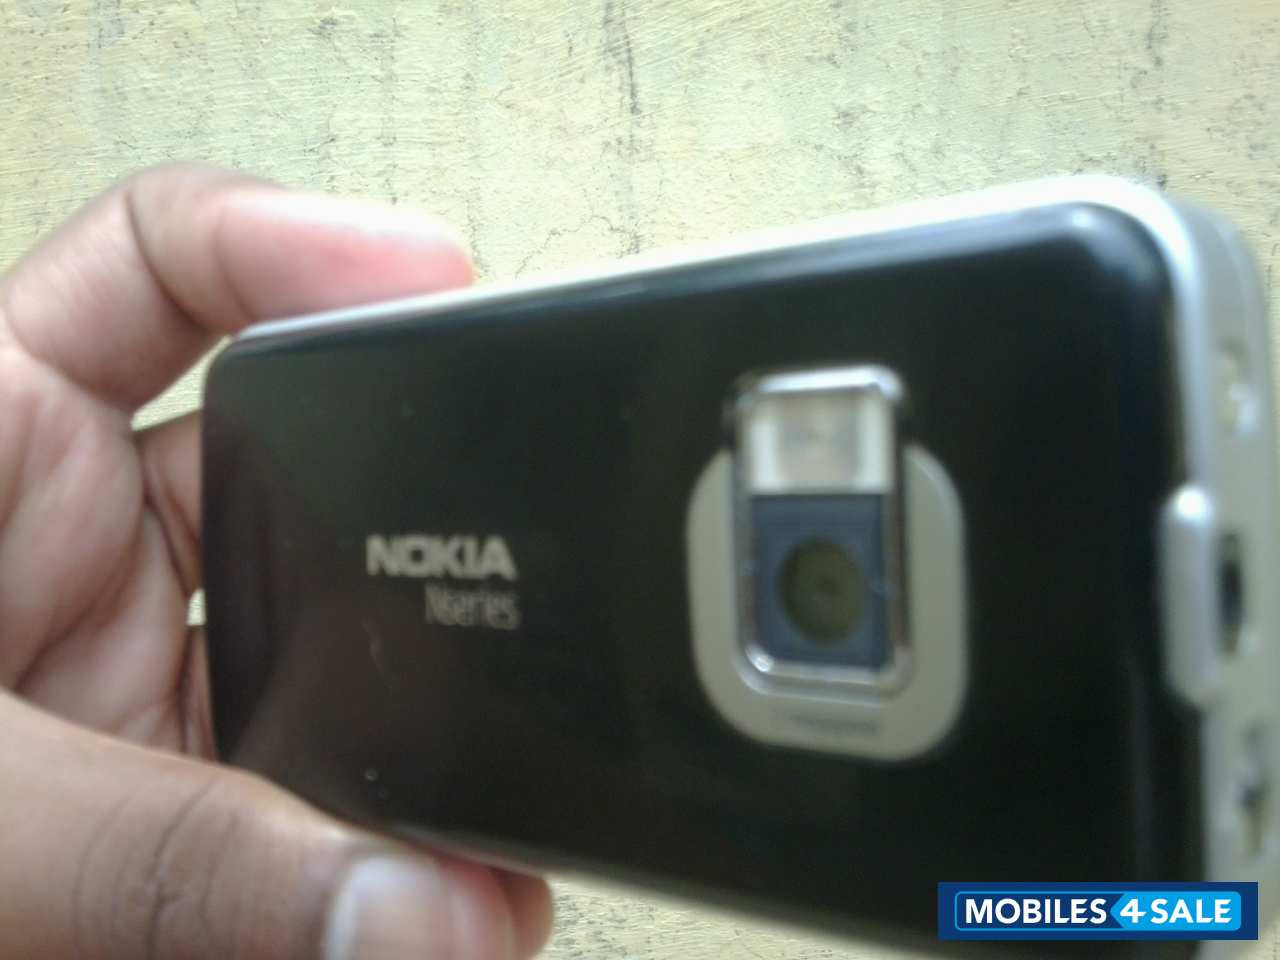 Black And Grey Nokia N81